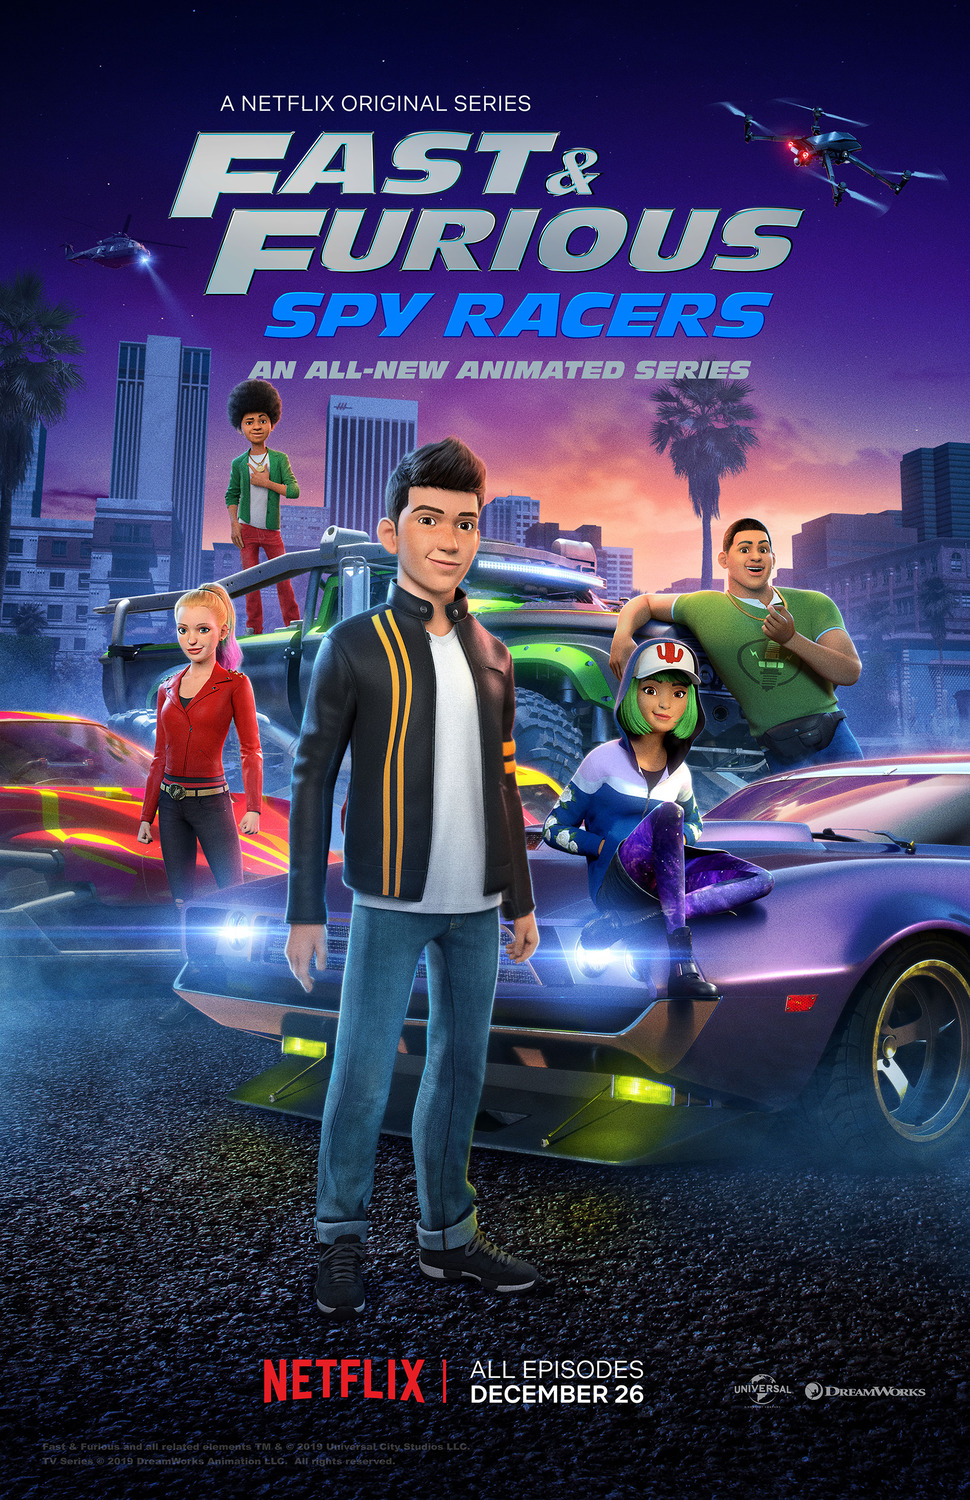 ดูหนังออนไลน์ฟรี Fast & Furious Spy Racers (2019) Season1 EP6 เร็ว…แรง ทะลุนรก ซิ่งสยบโลก  ตอนที่ 6 (พากย์ไทย)